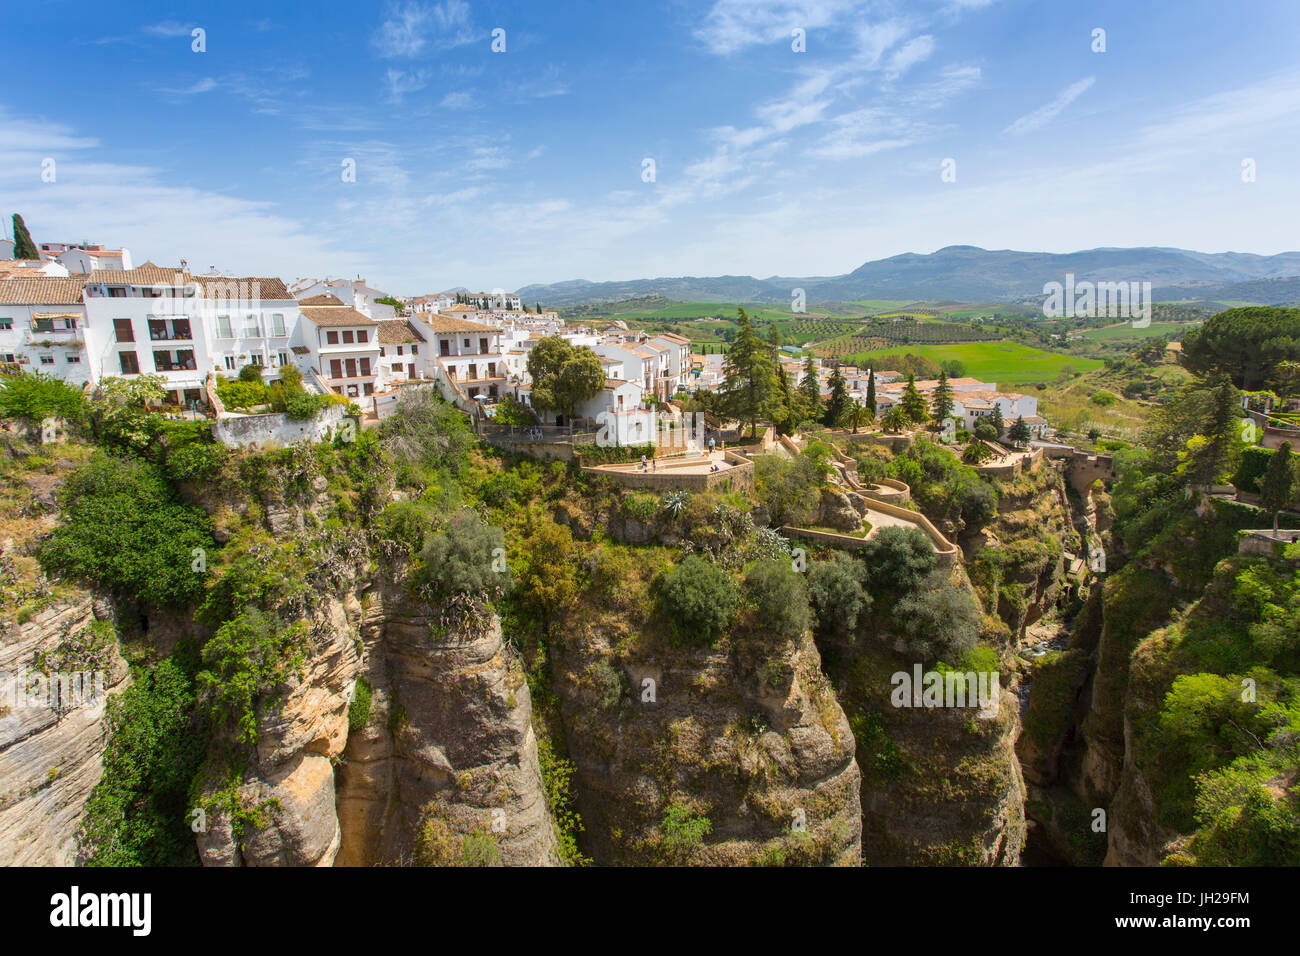 Avis de Ronda et campagne andalouse de Puente Nuevo, Ronda, Andalousie, Espagne, Europe Banque D'Images